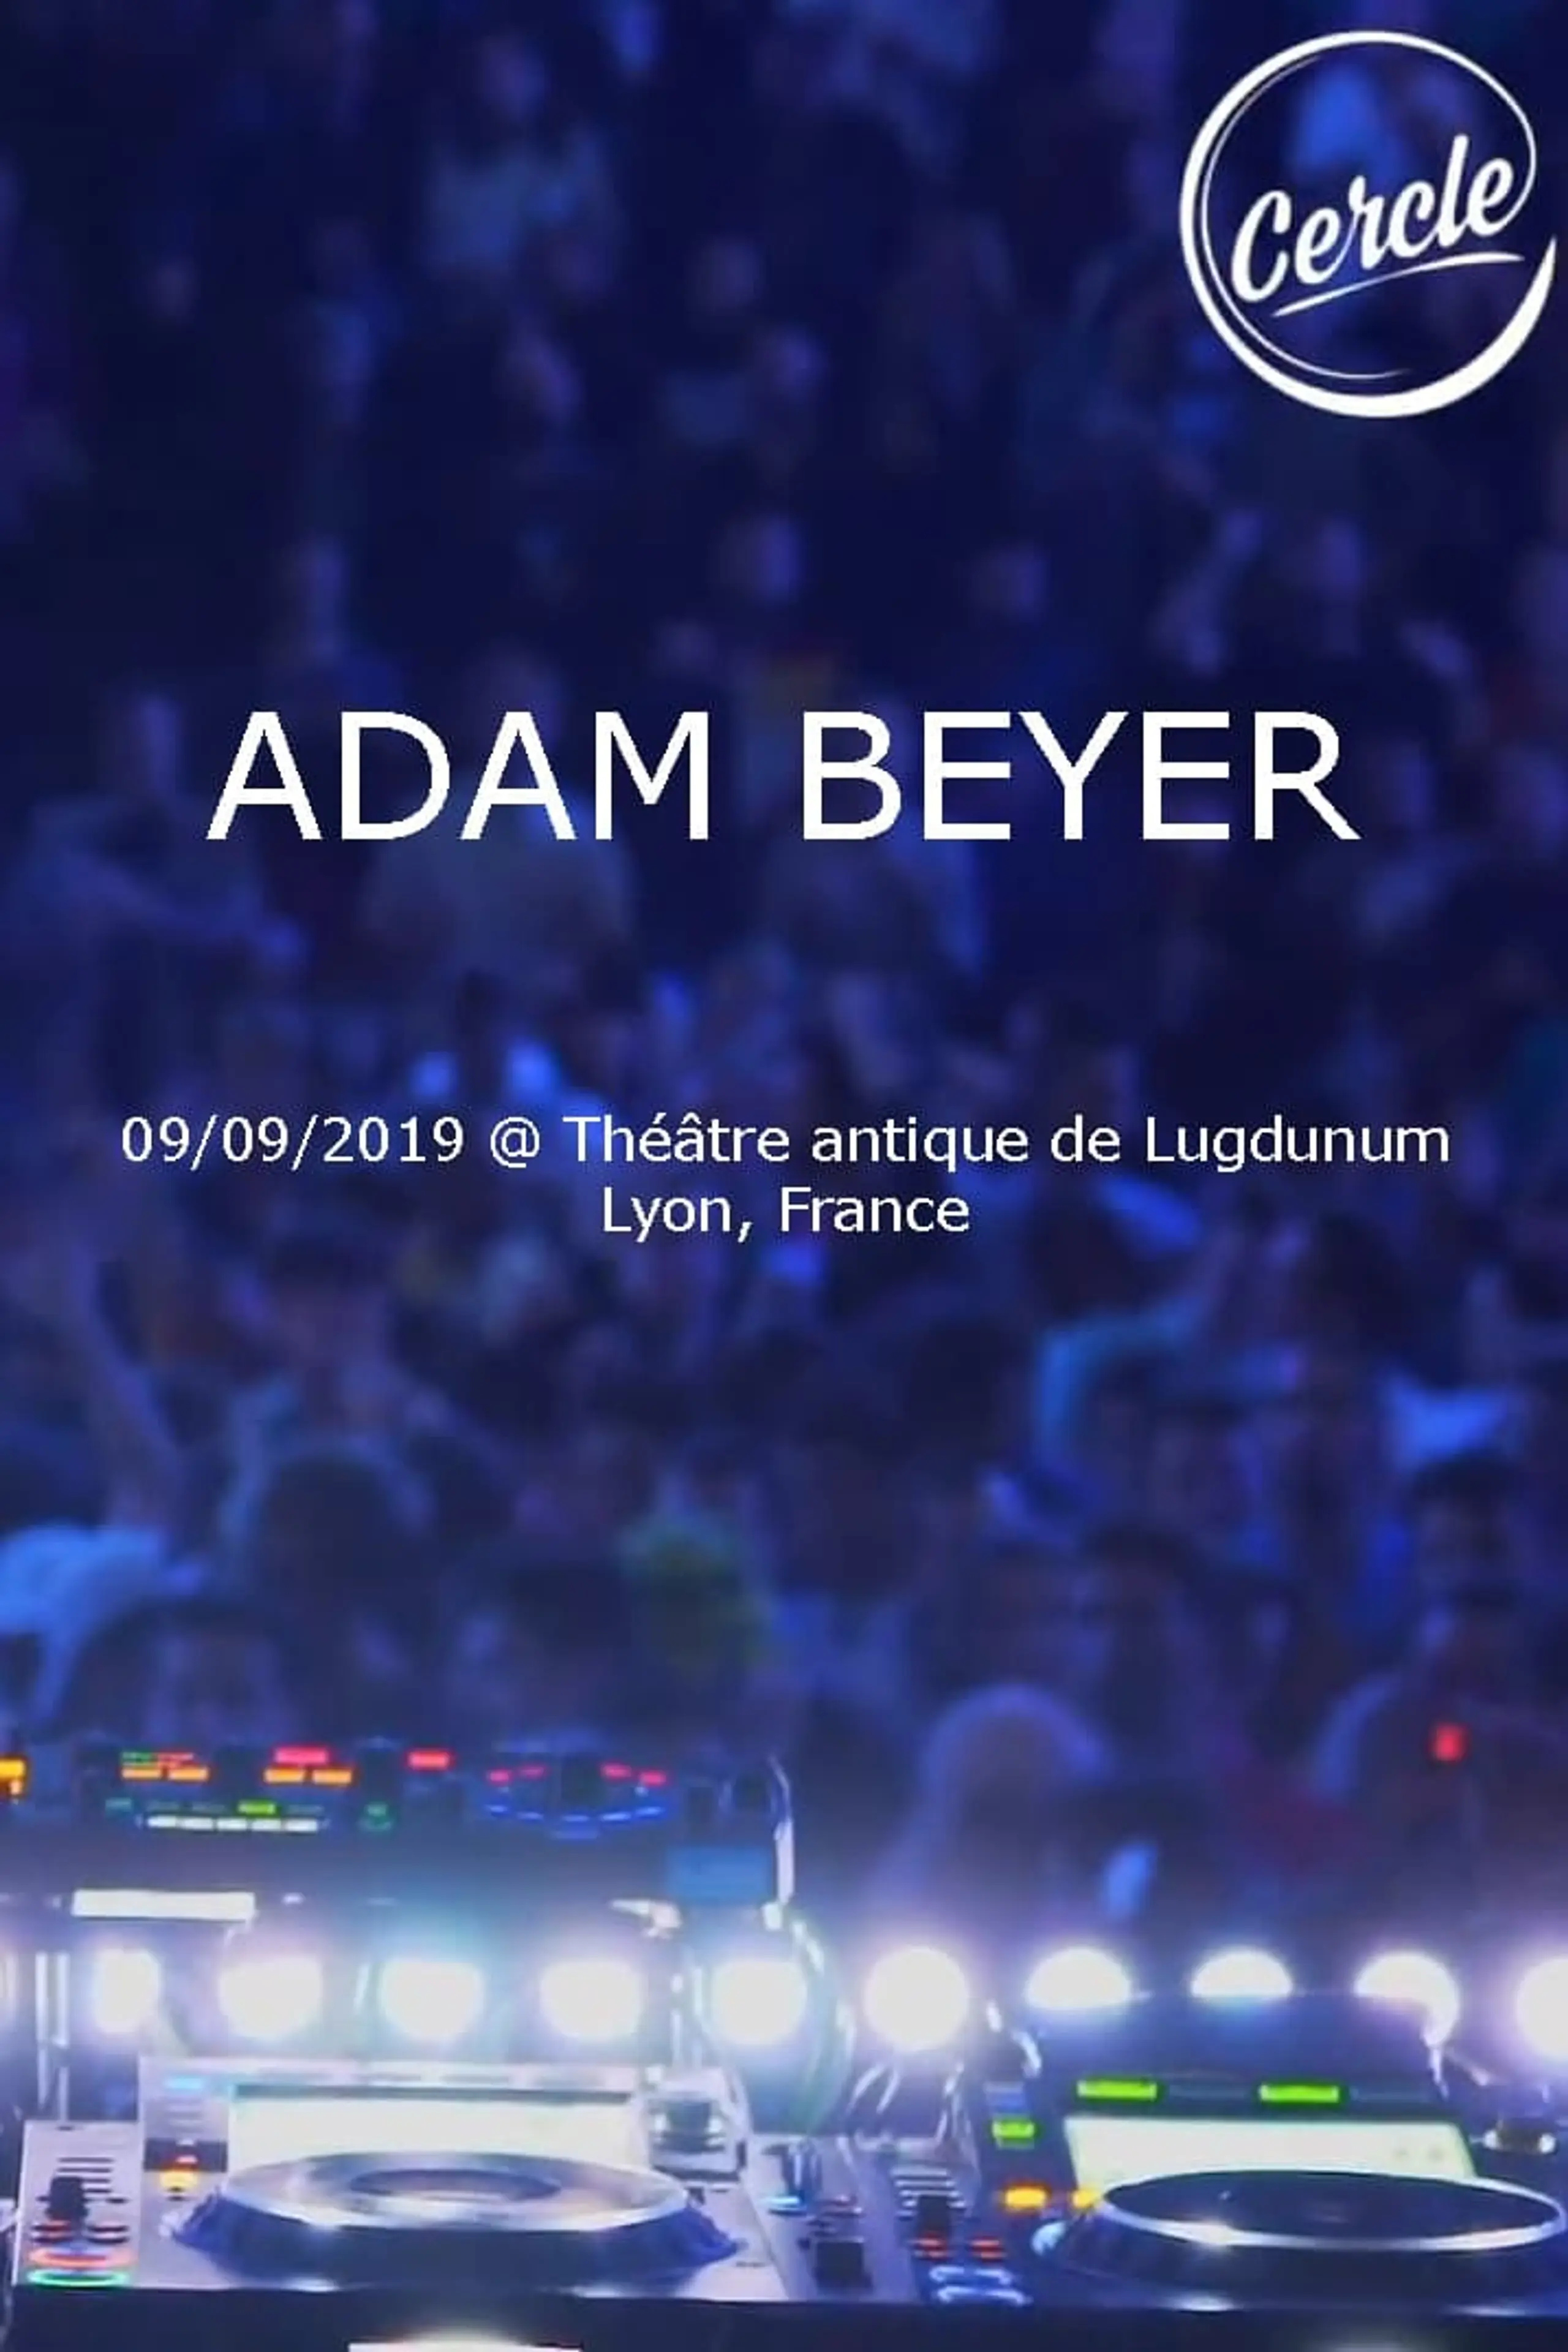 Adam Beyer at Théâtre antique de Lugdunum in Lyon, France